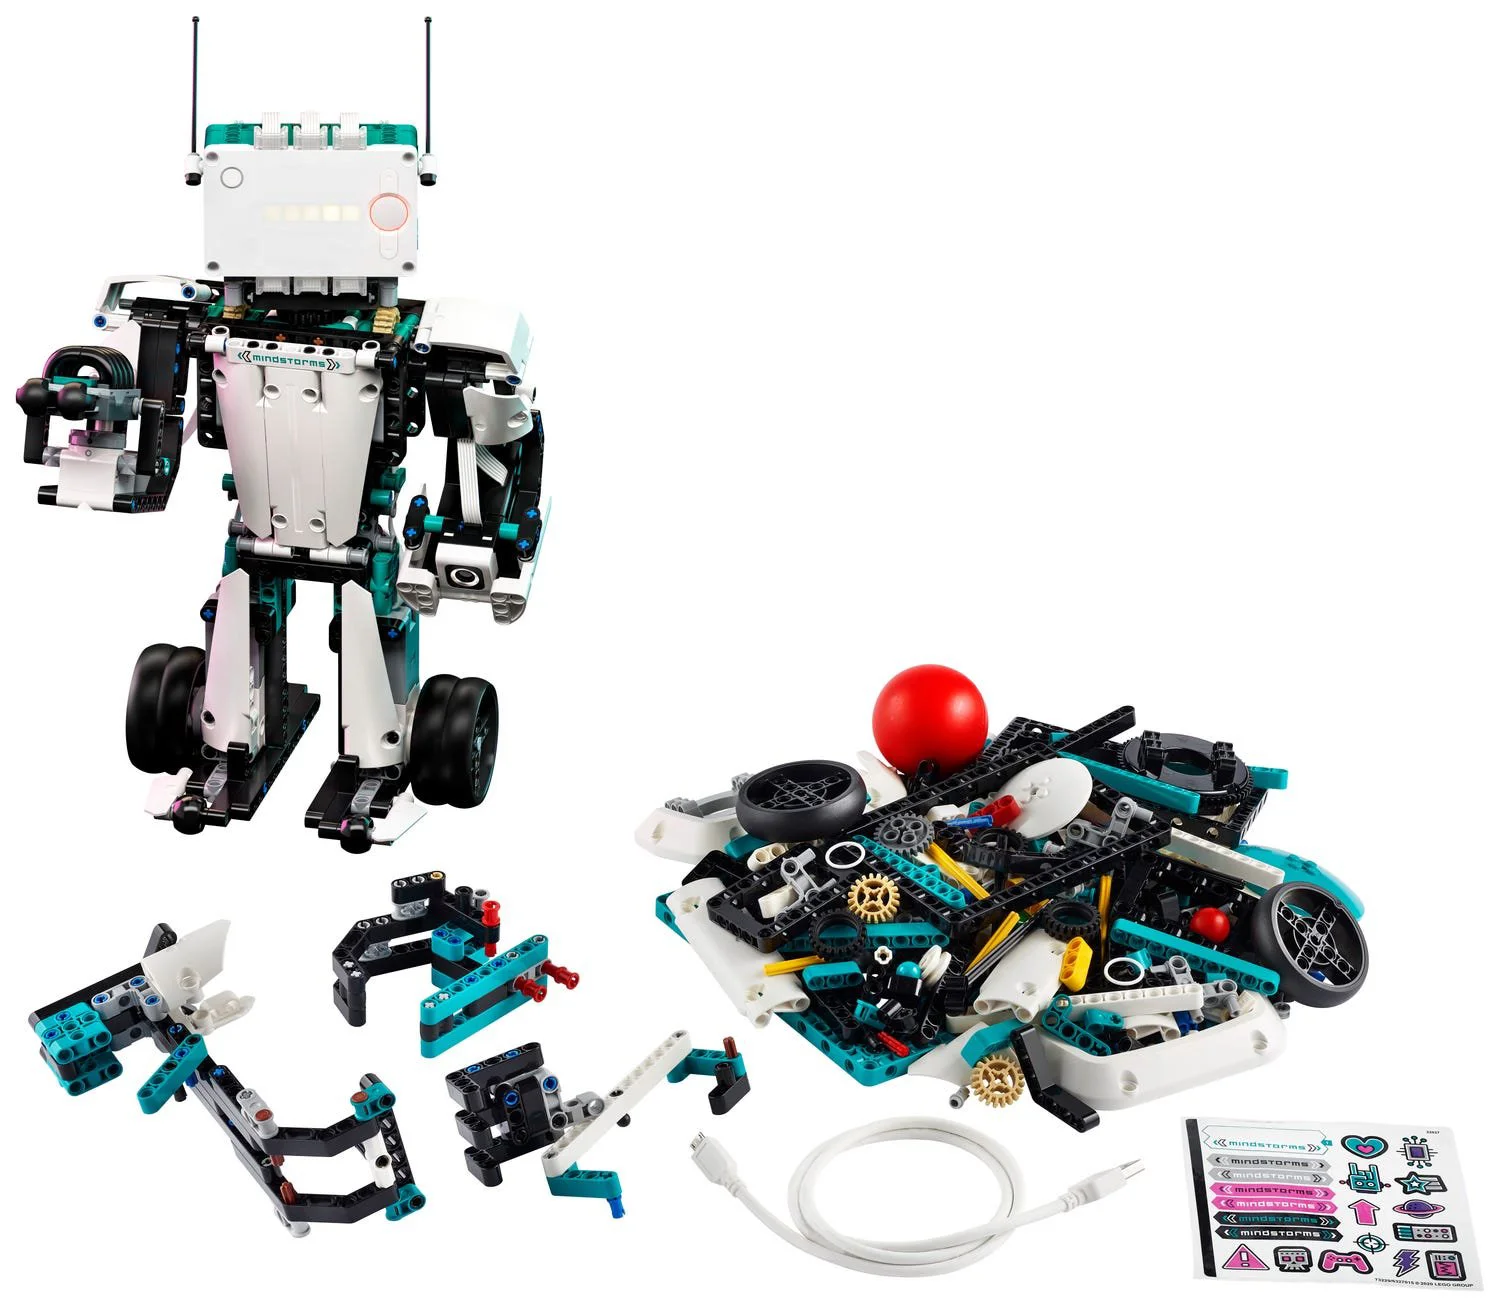 LEGO Mindstorms - Robot Inventor